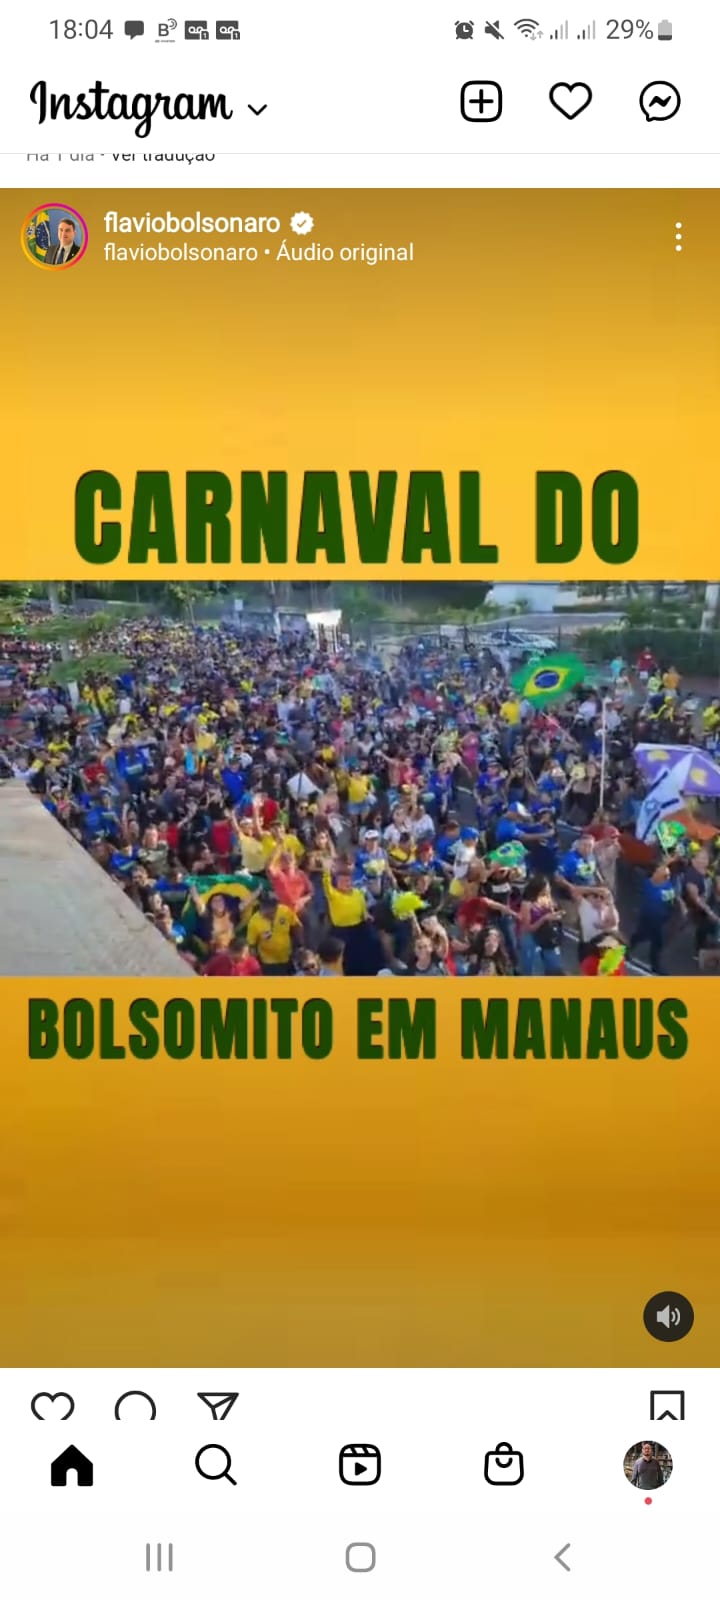 Carnaval do Bolsomito